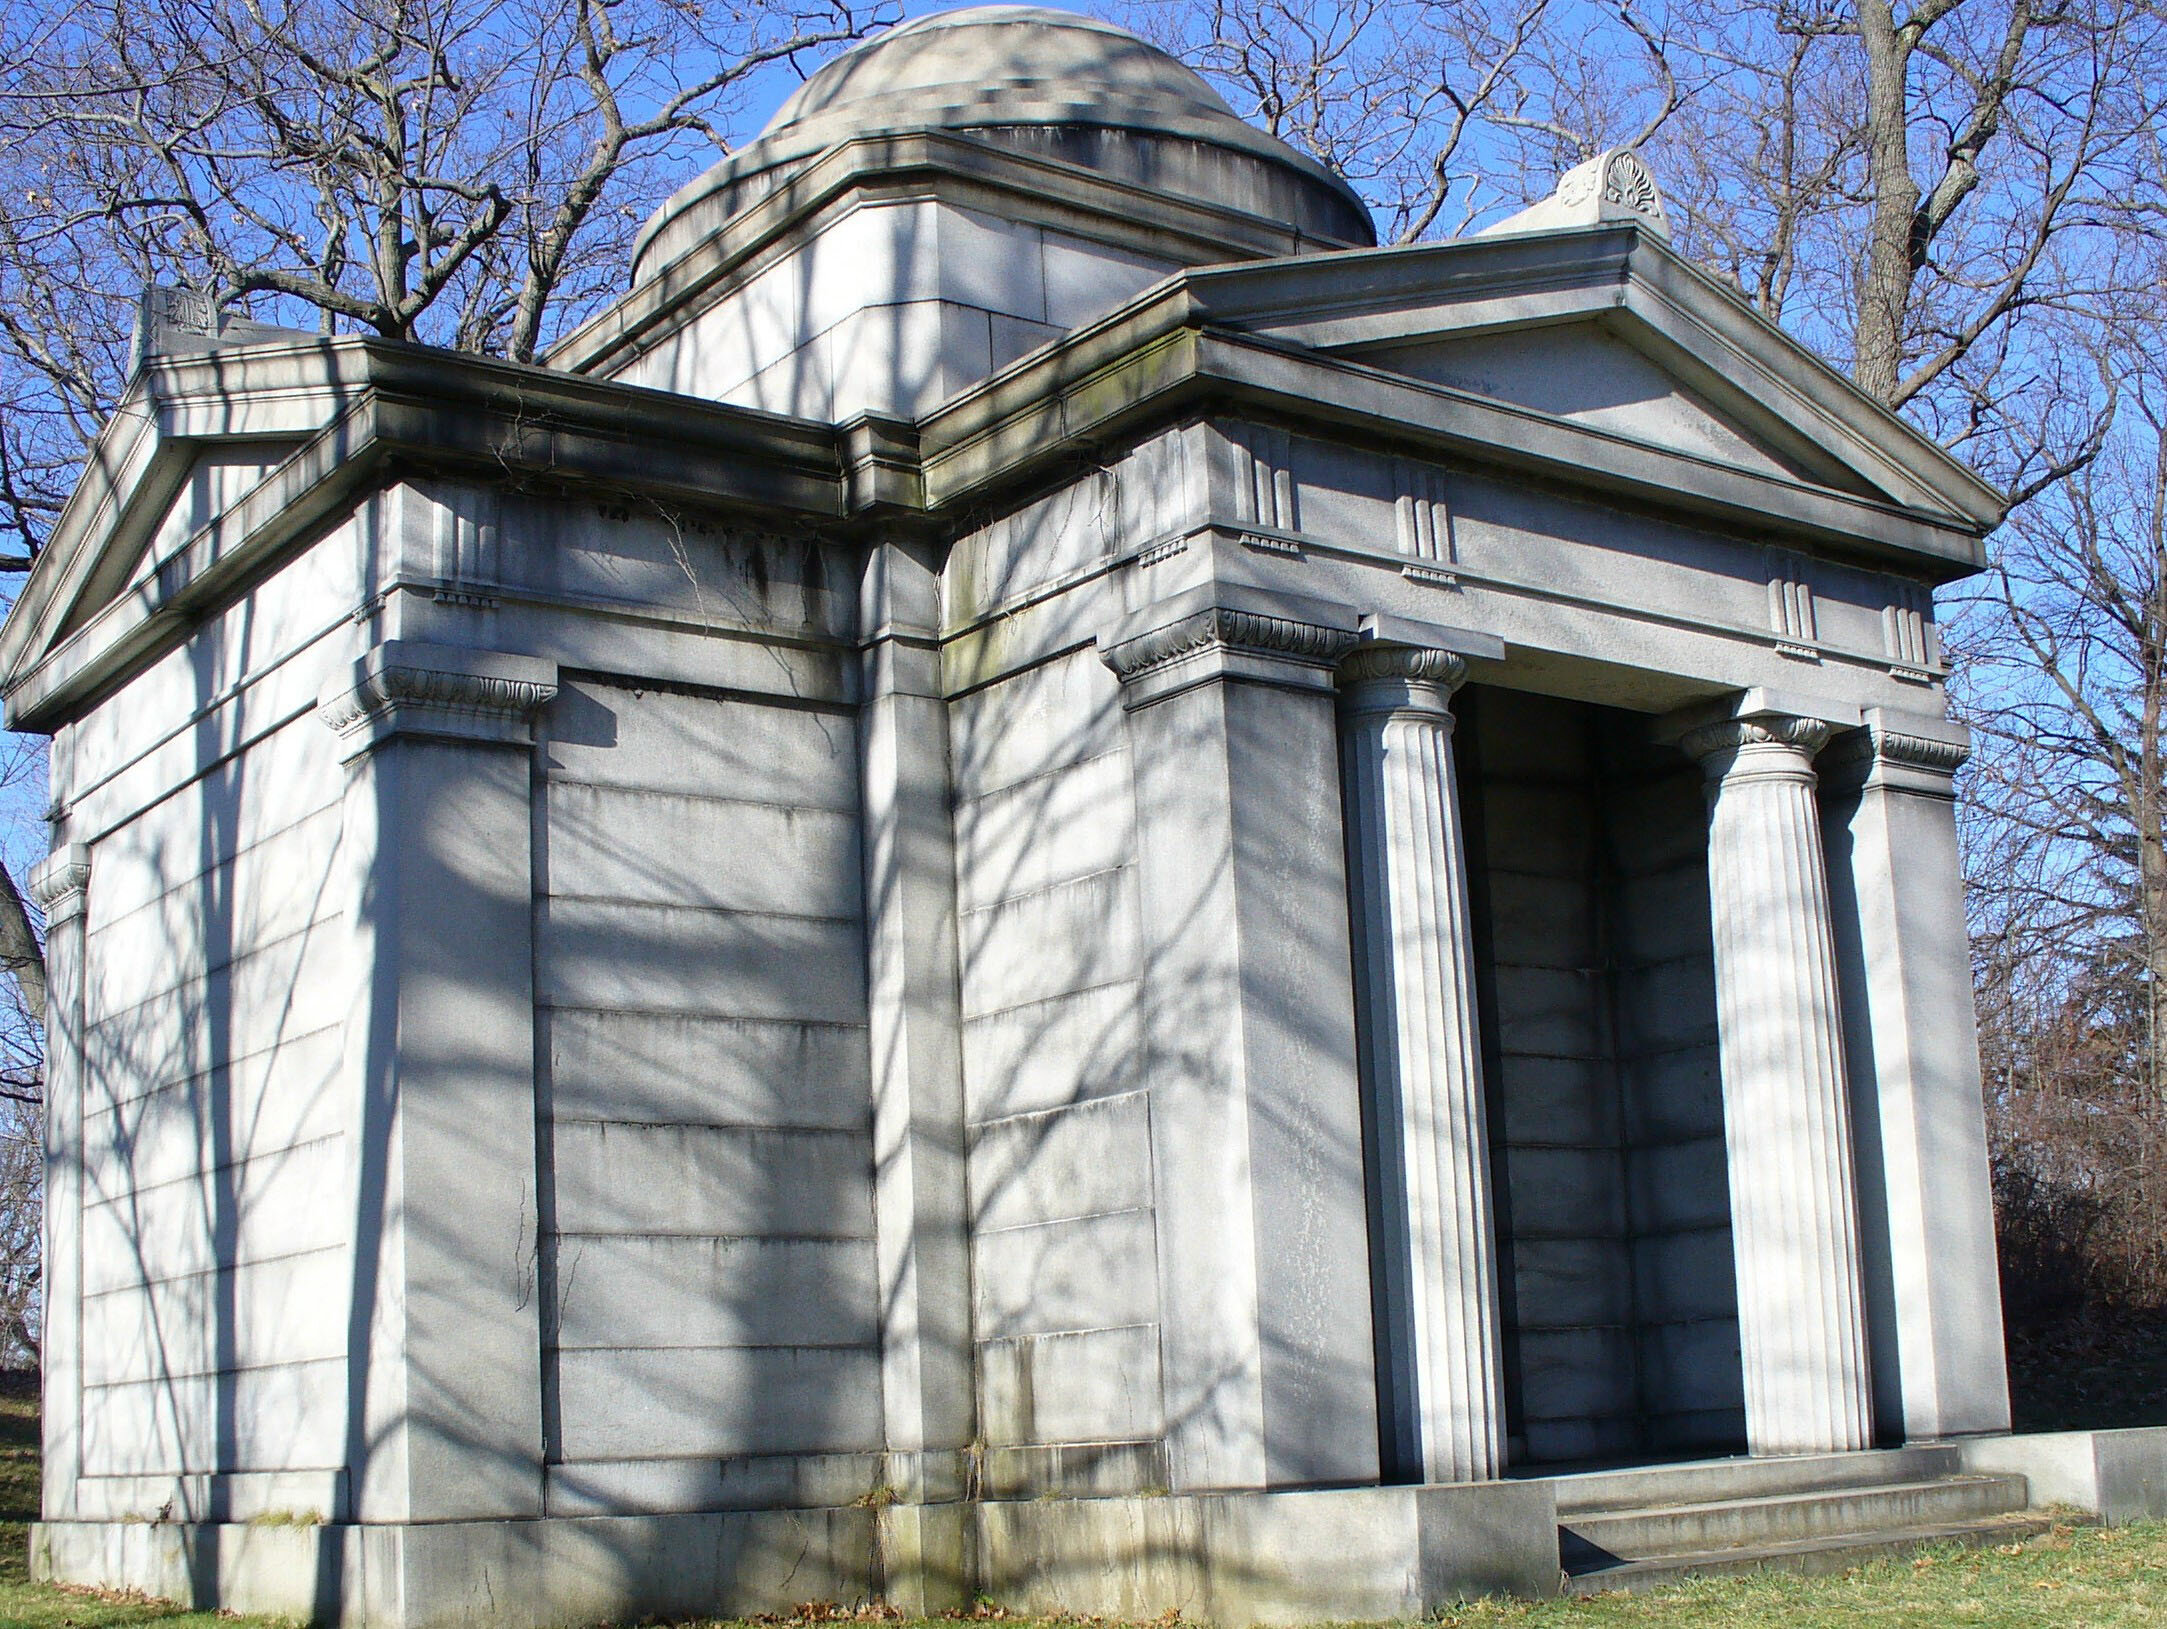 The Cannon Mausoleum